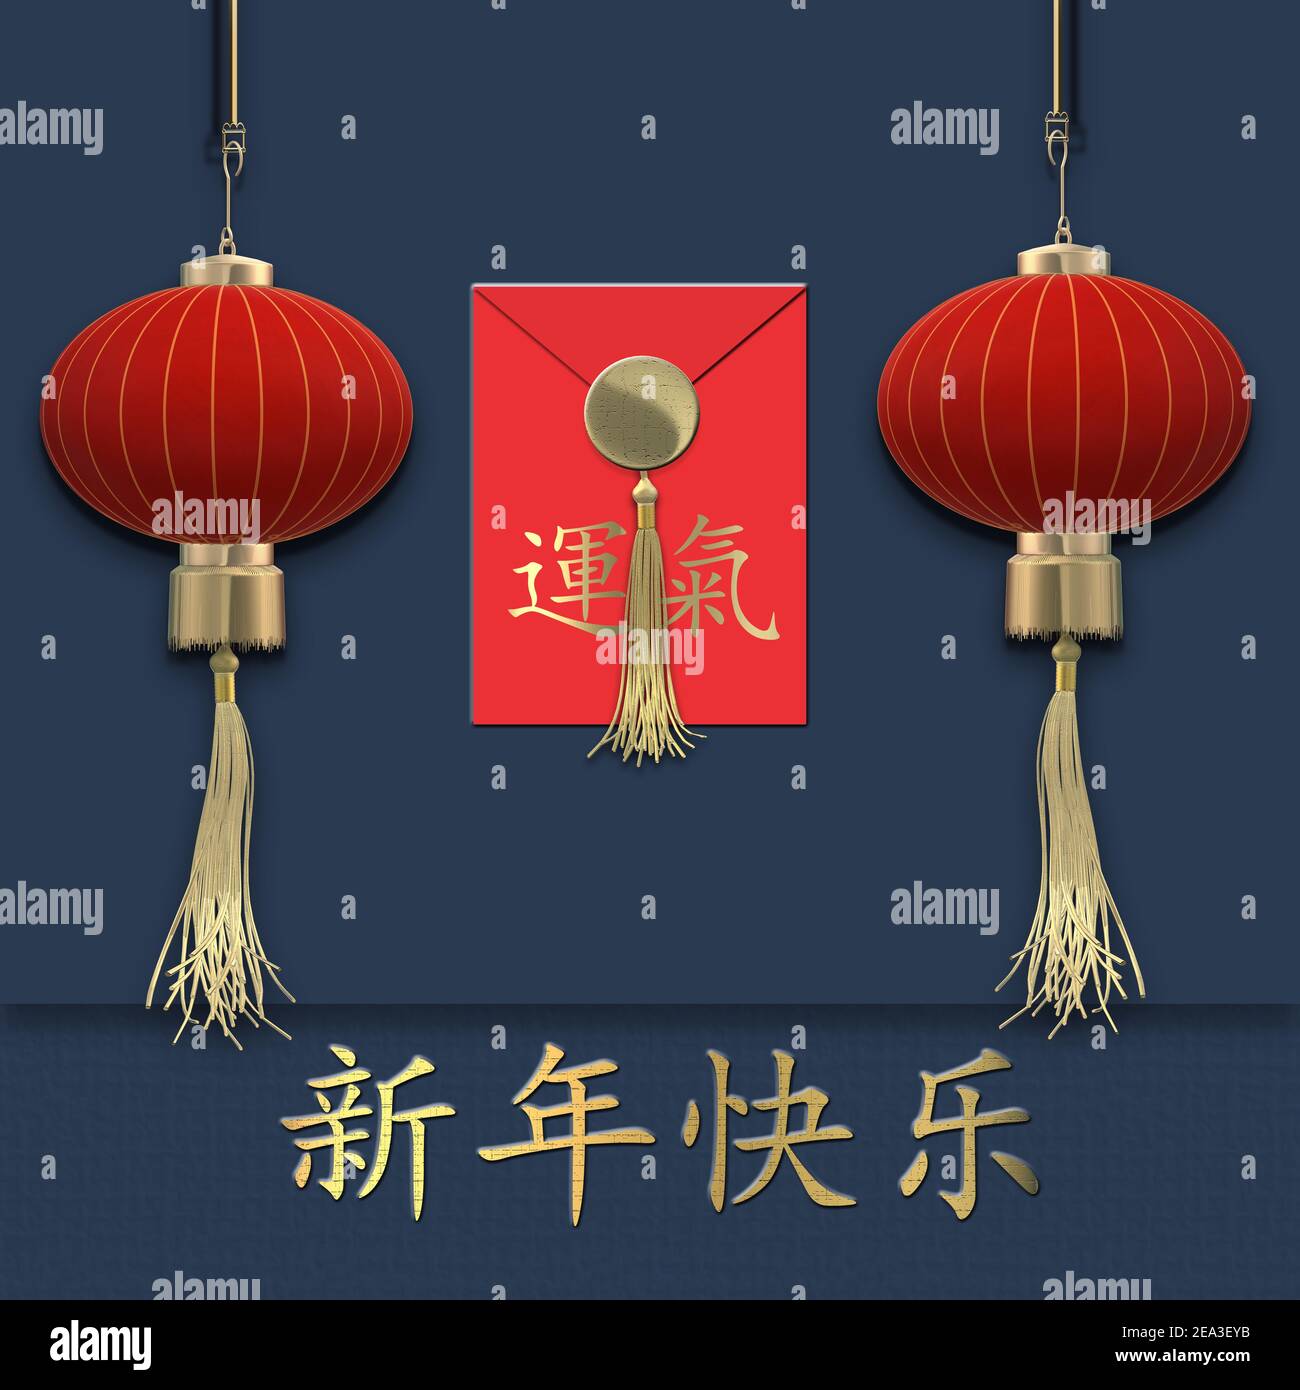 Chinesisches Neujahr 2021 über blau. Rote realistische Laternen. Rot Chinesisch Glück Umschlag mit Text Chinesisch Übersetzung Glück. Text Chinesische Übersetzung glücklich Stockfoto